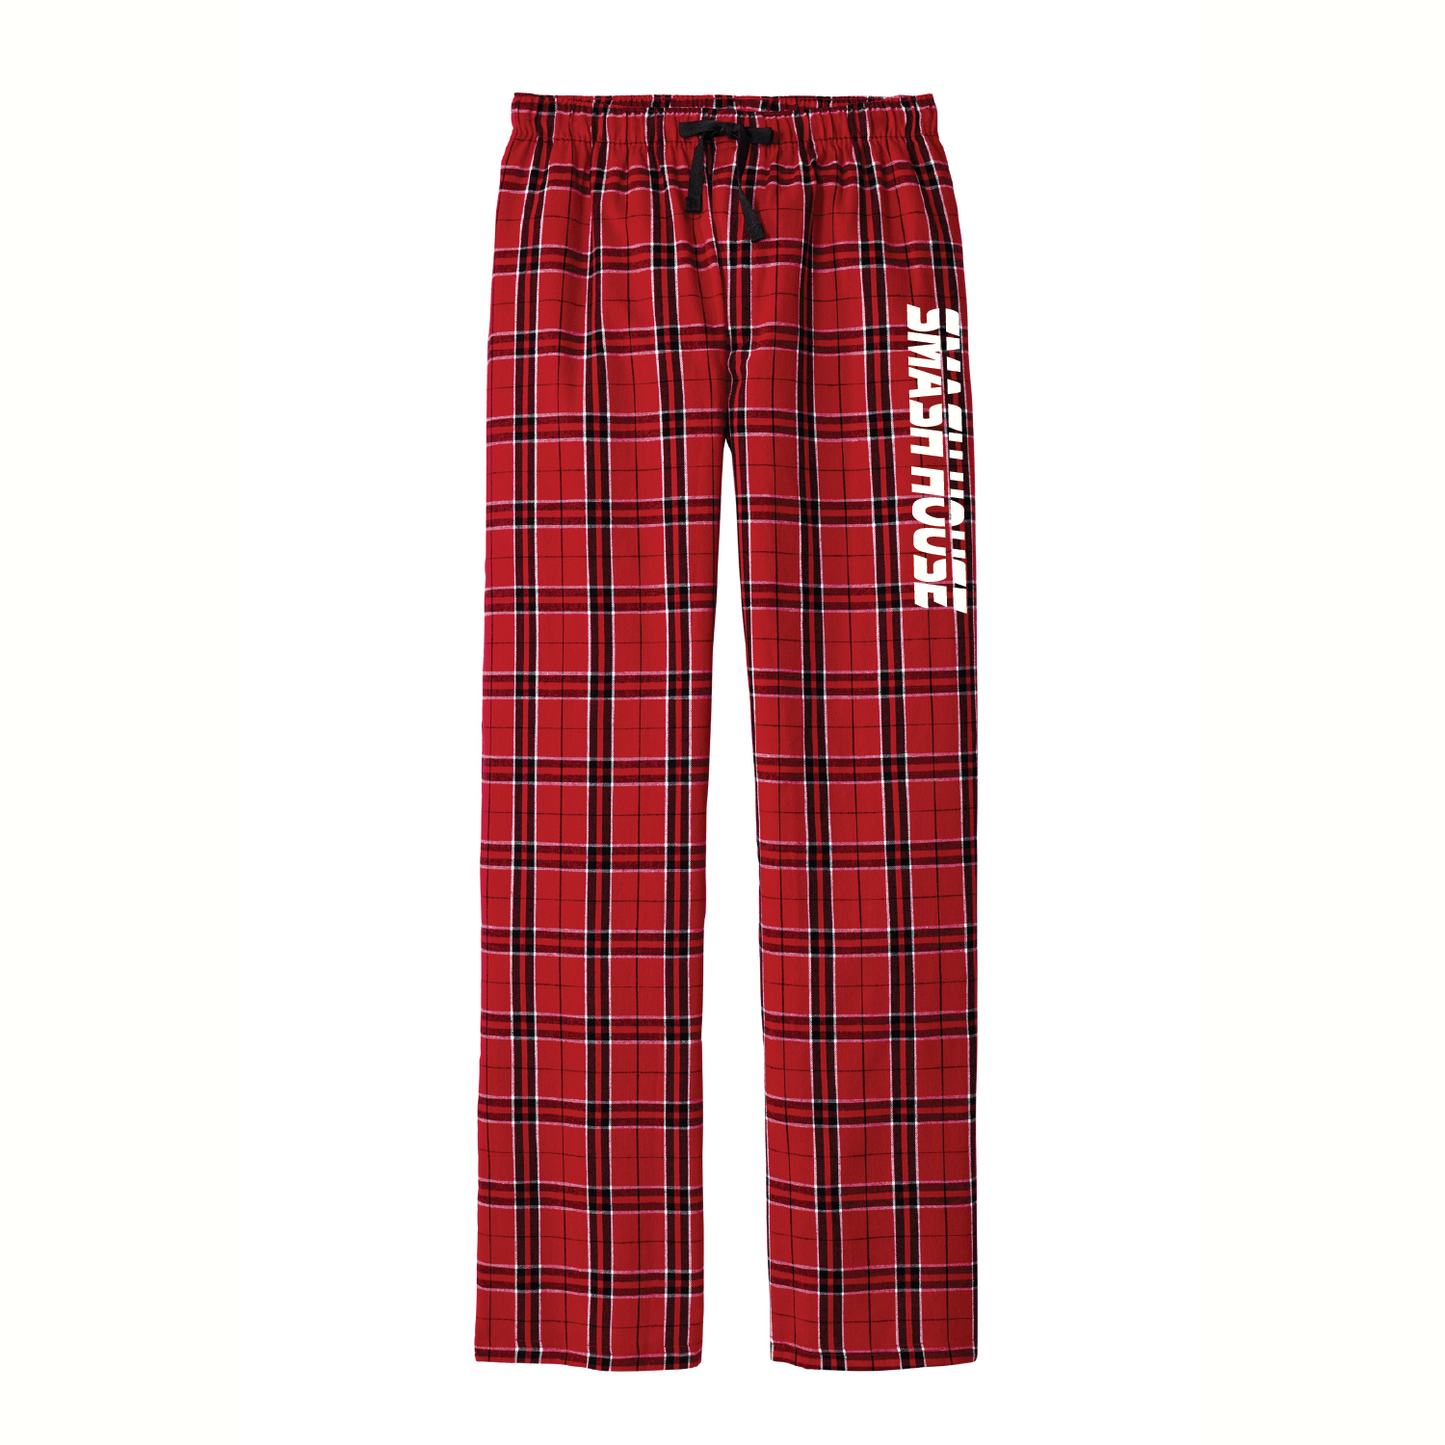 Smash House Unisex Pajama Pants